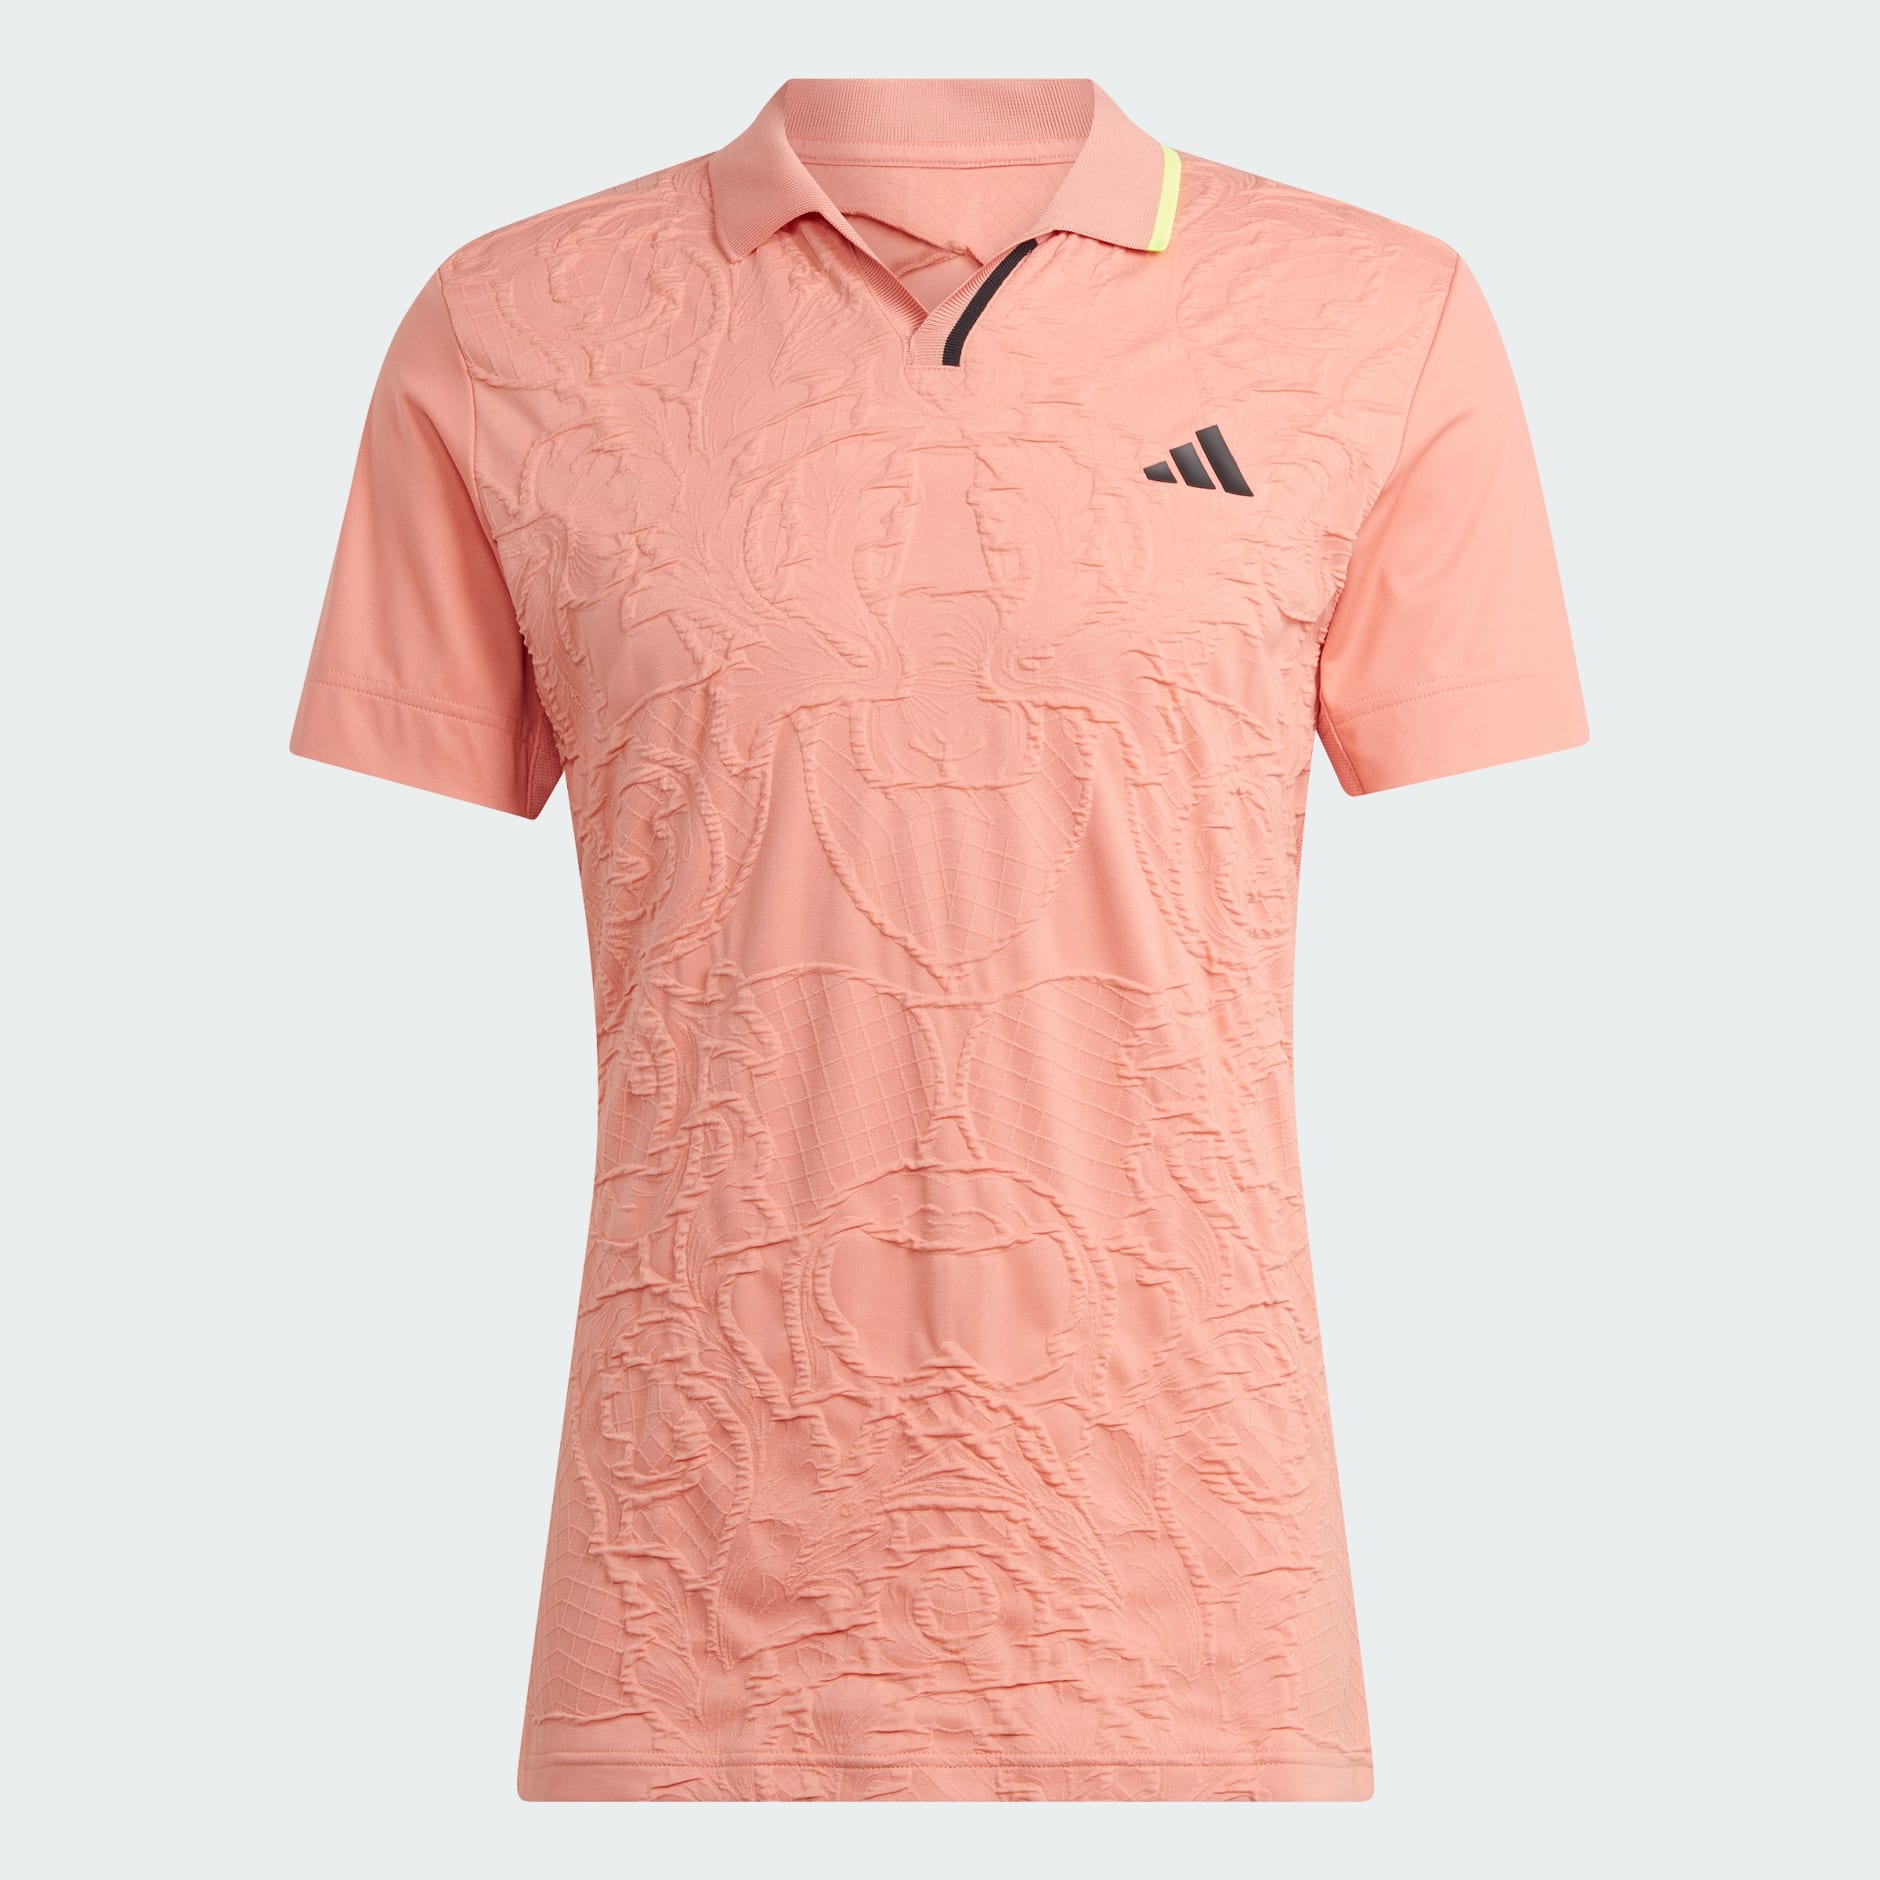 Men's Clothing - AEROREADY FreeLift Pro Tennis Polo Shirt - Red ...